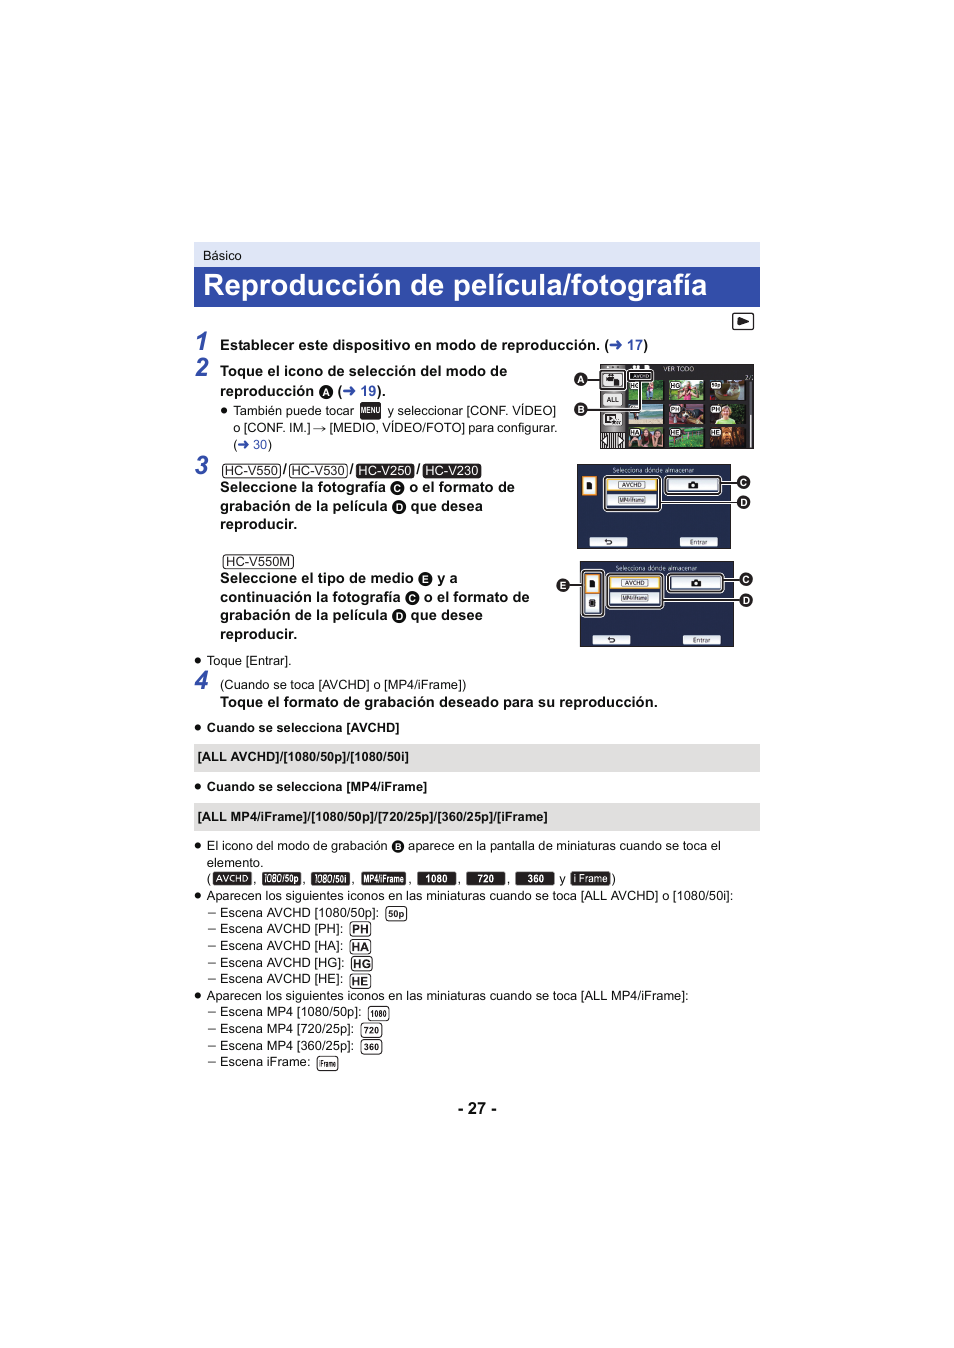 Reproducción de película/fotografía | Panasonic HCV250EC Manual del usuario | Página 27 / 214